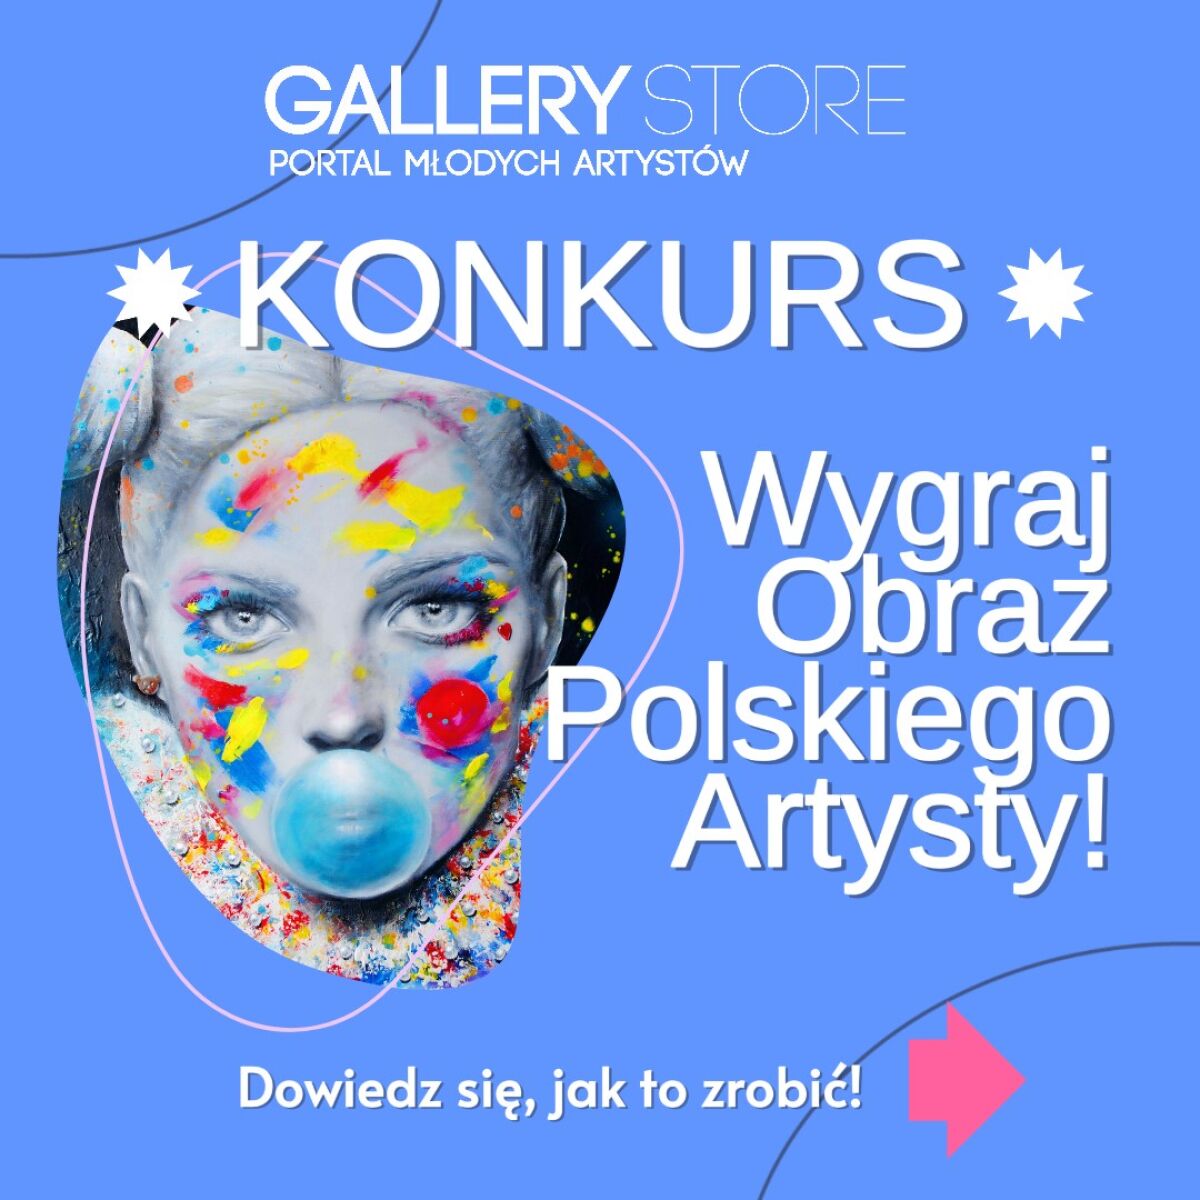 KONKURS Gallery Store - Wygraj Obraz Polskiego Artysty!